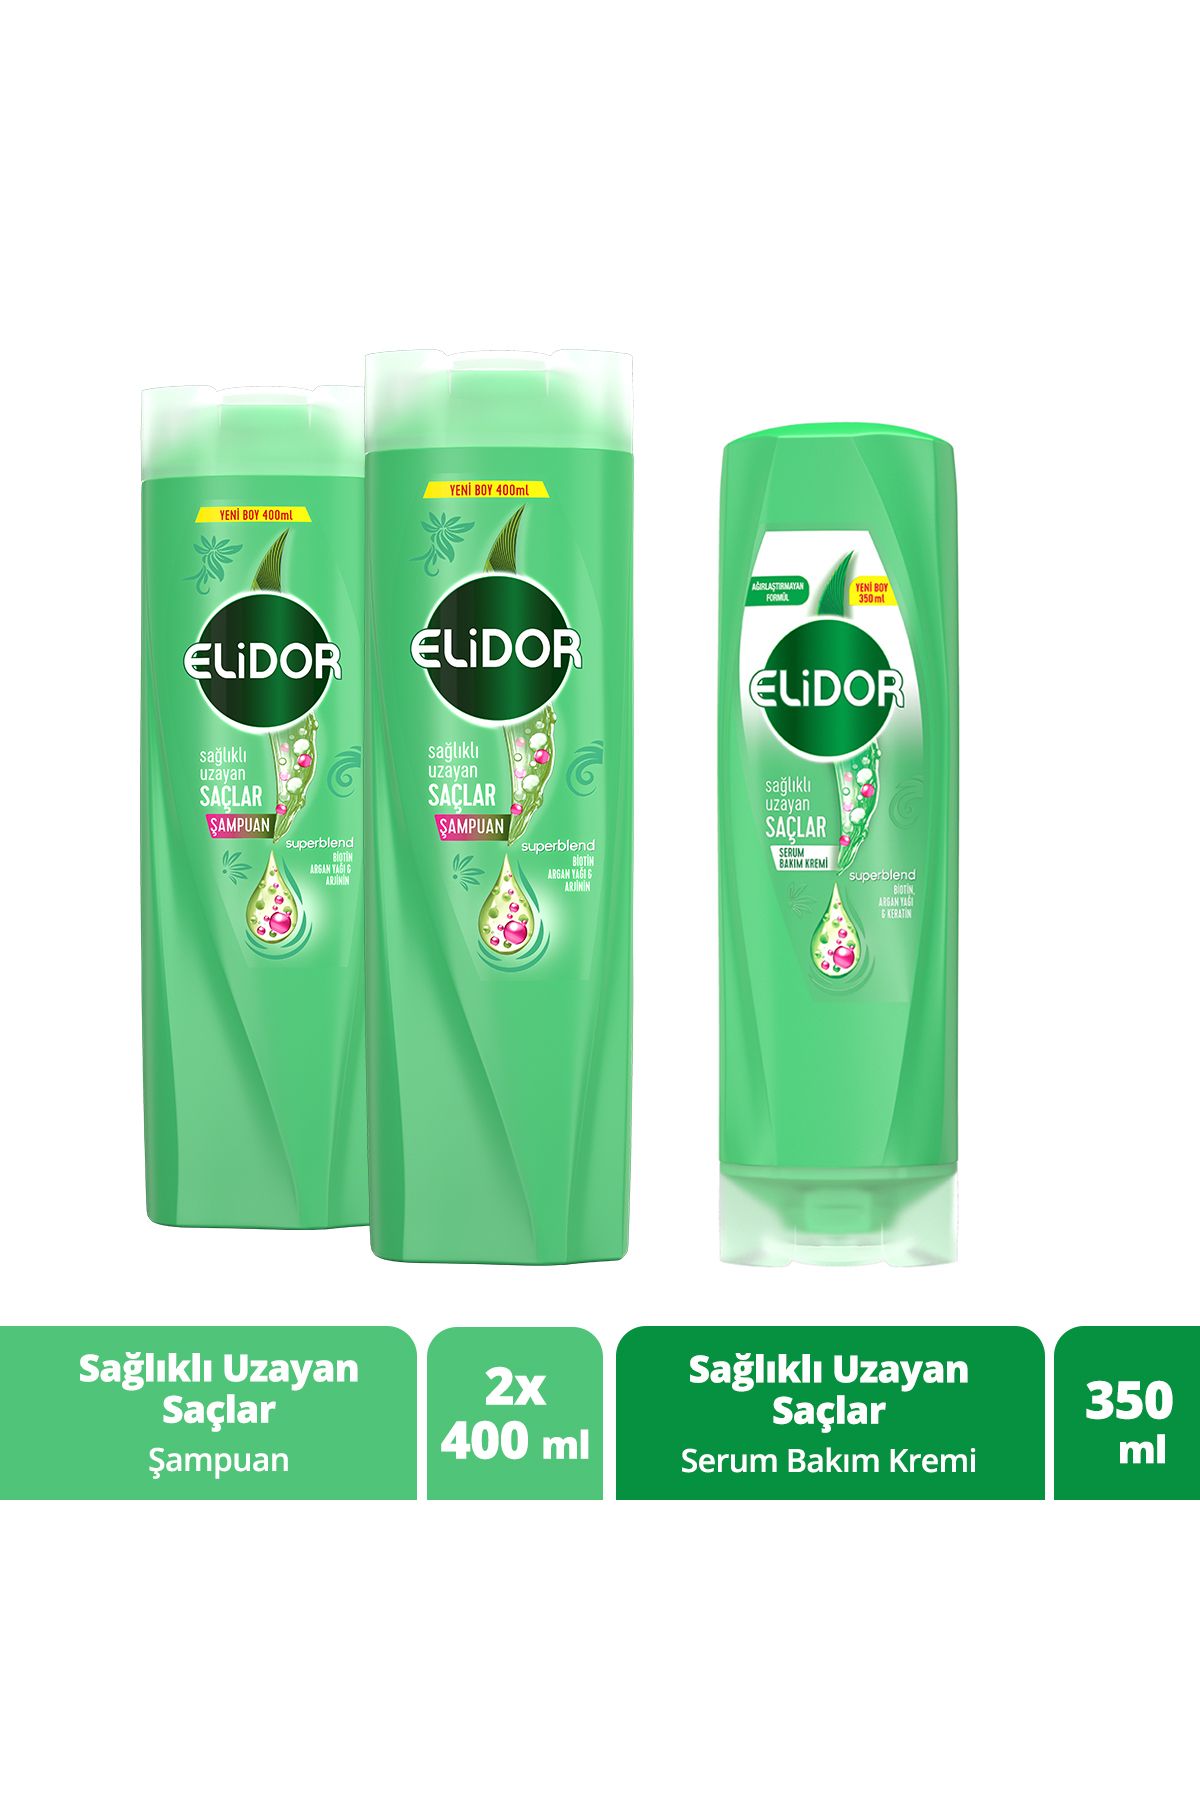 Elidor Superblend Saç Bakım Şampuanı Sağlıklı Uzayan Saçlar 400 ml X2 Serum Bakım Kremi 350 ml